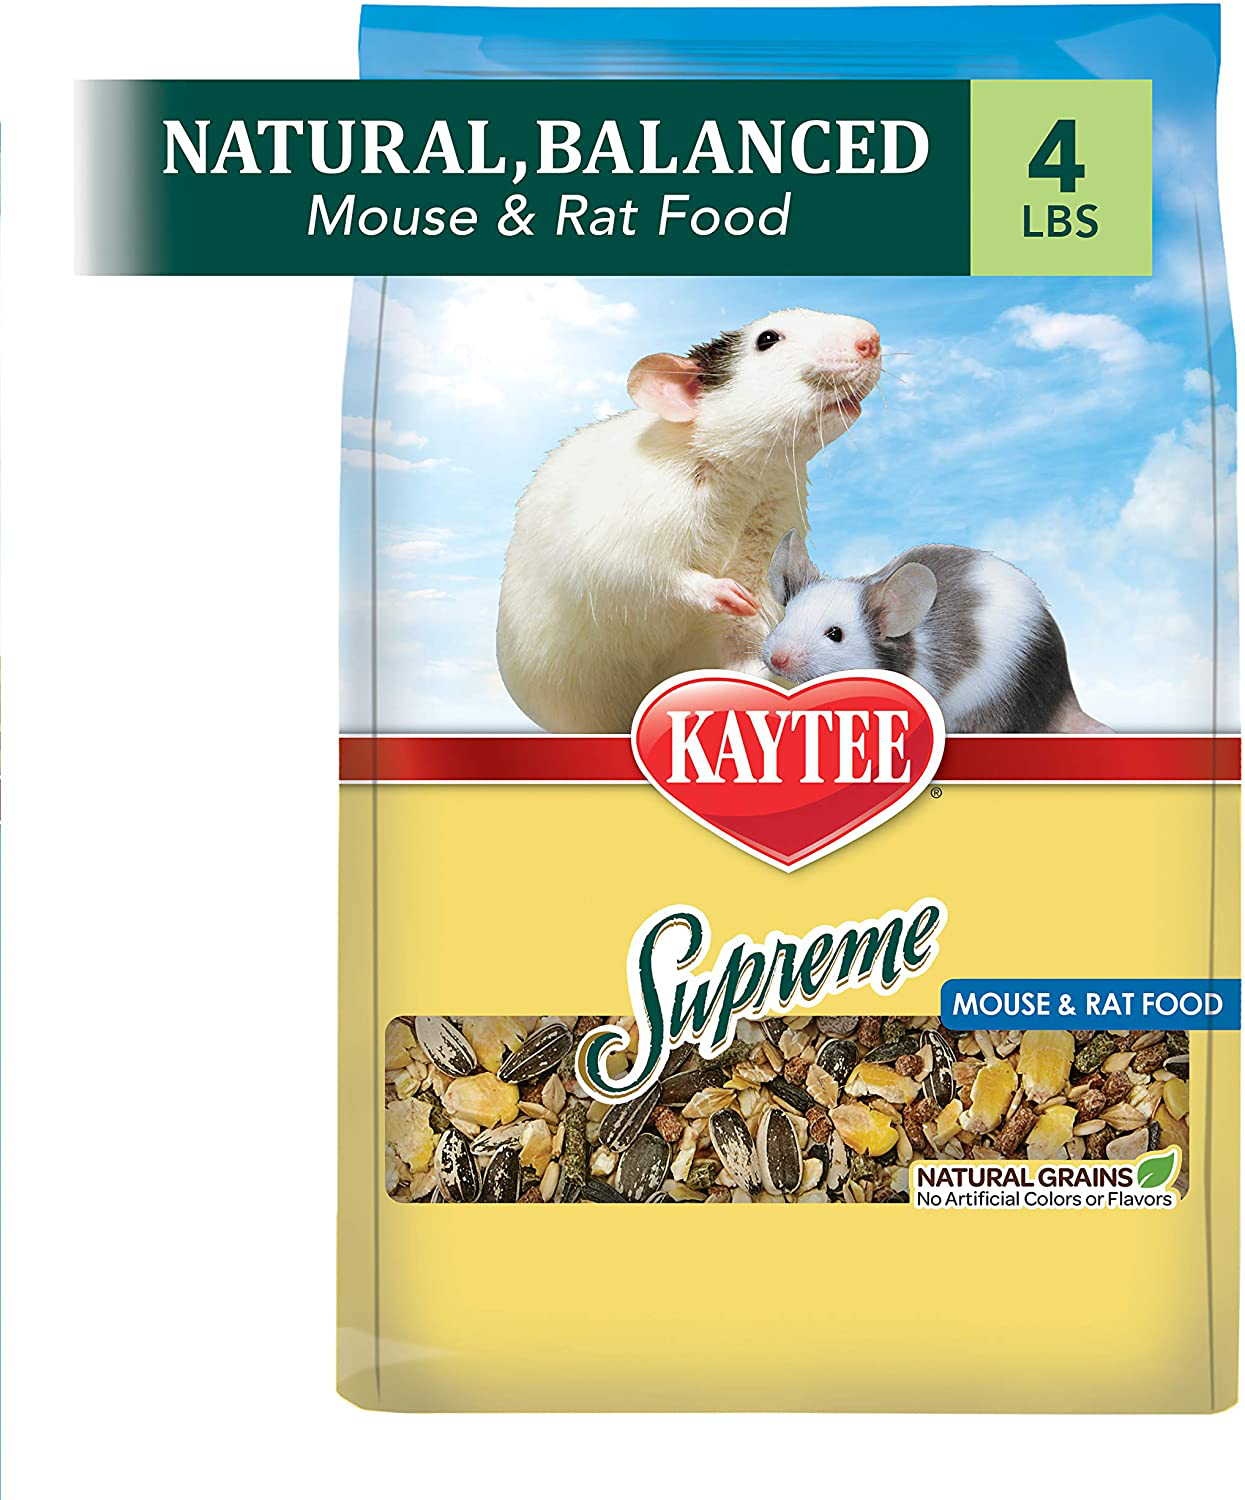 Kaytee Supreme Mouse and Rat Food